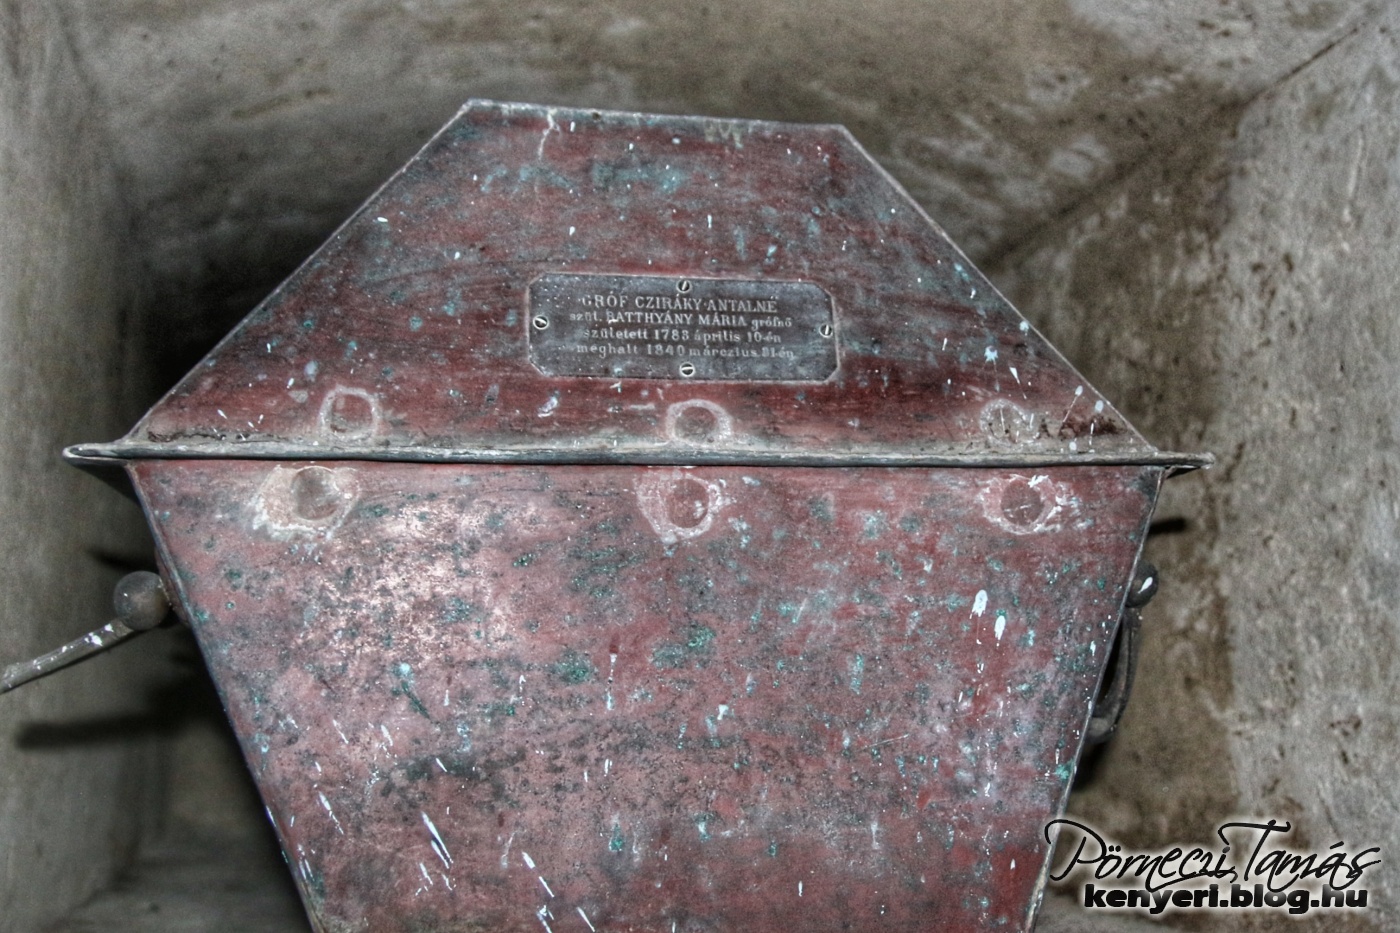 gróf Cziráky Antalné külső, díszes koporsója eltűnt, csak a belső koporsója maradt meg 1840-ből